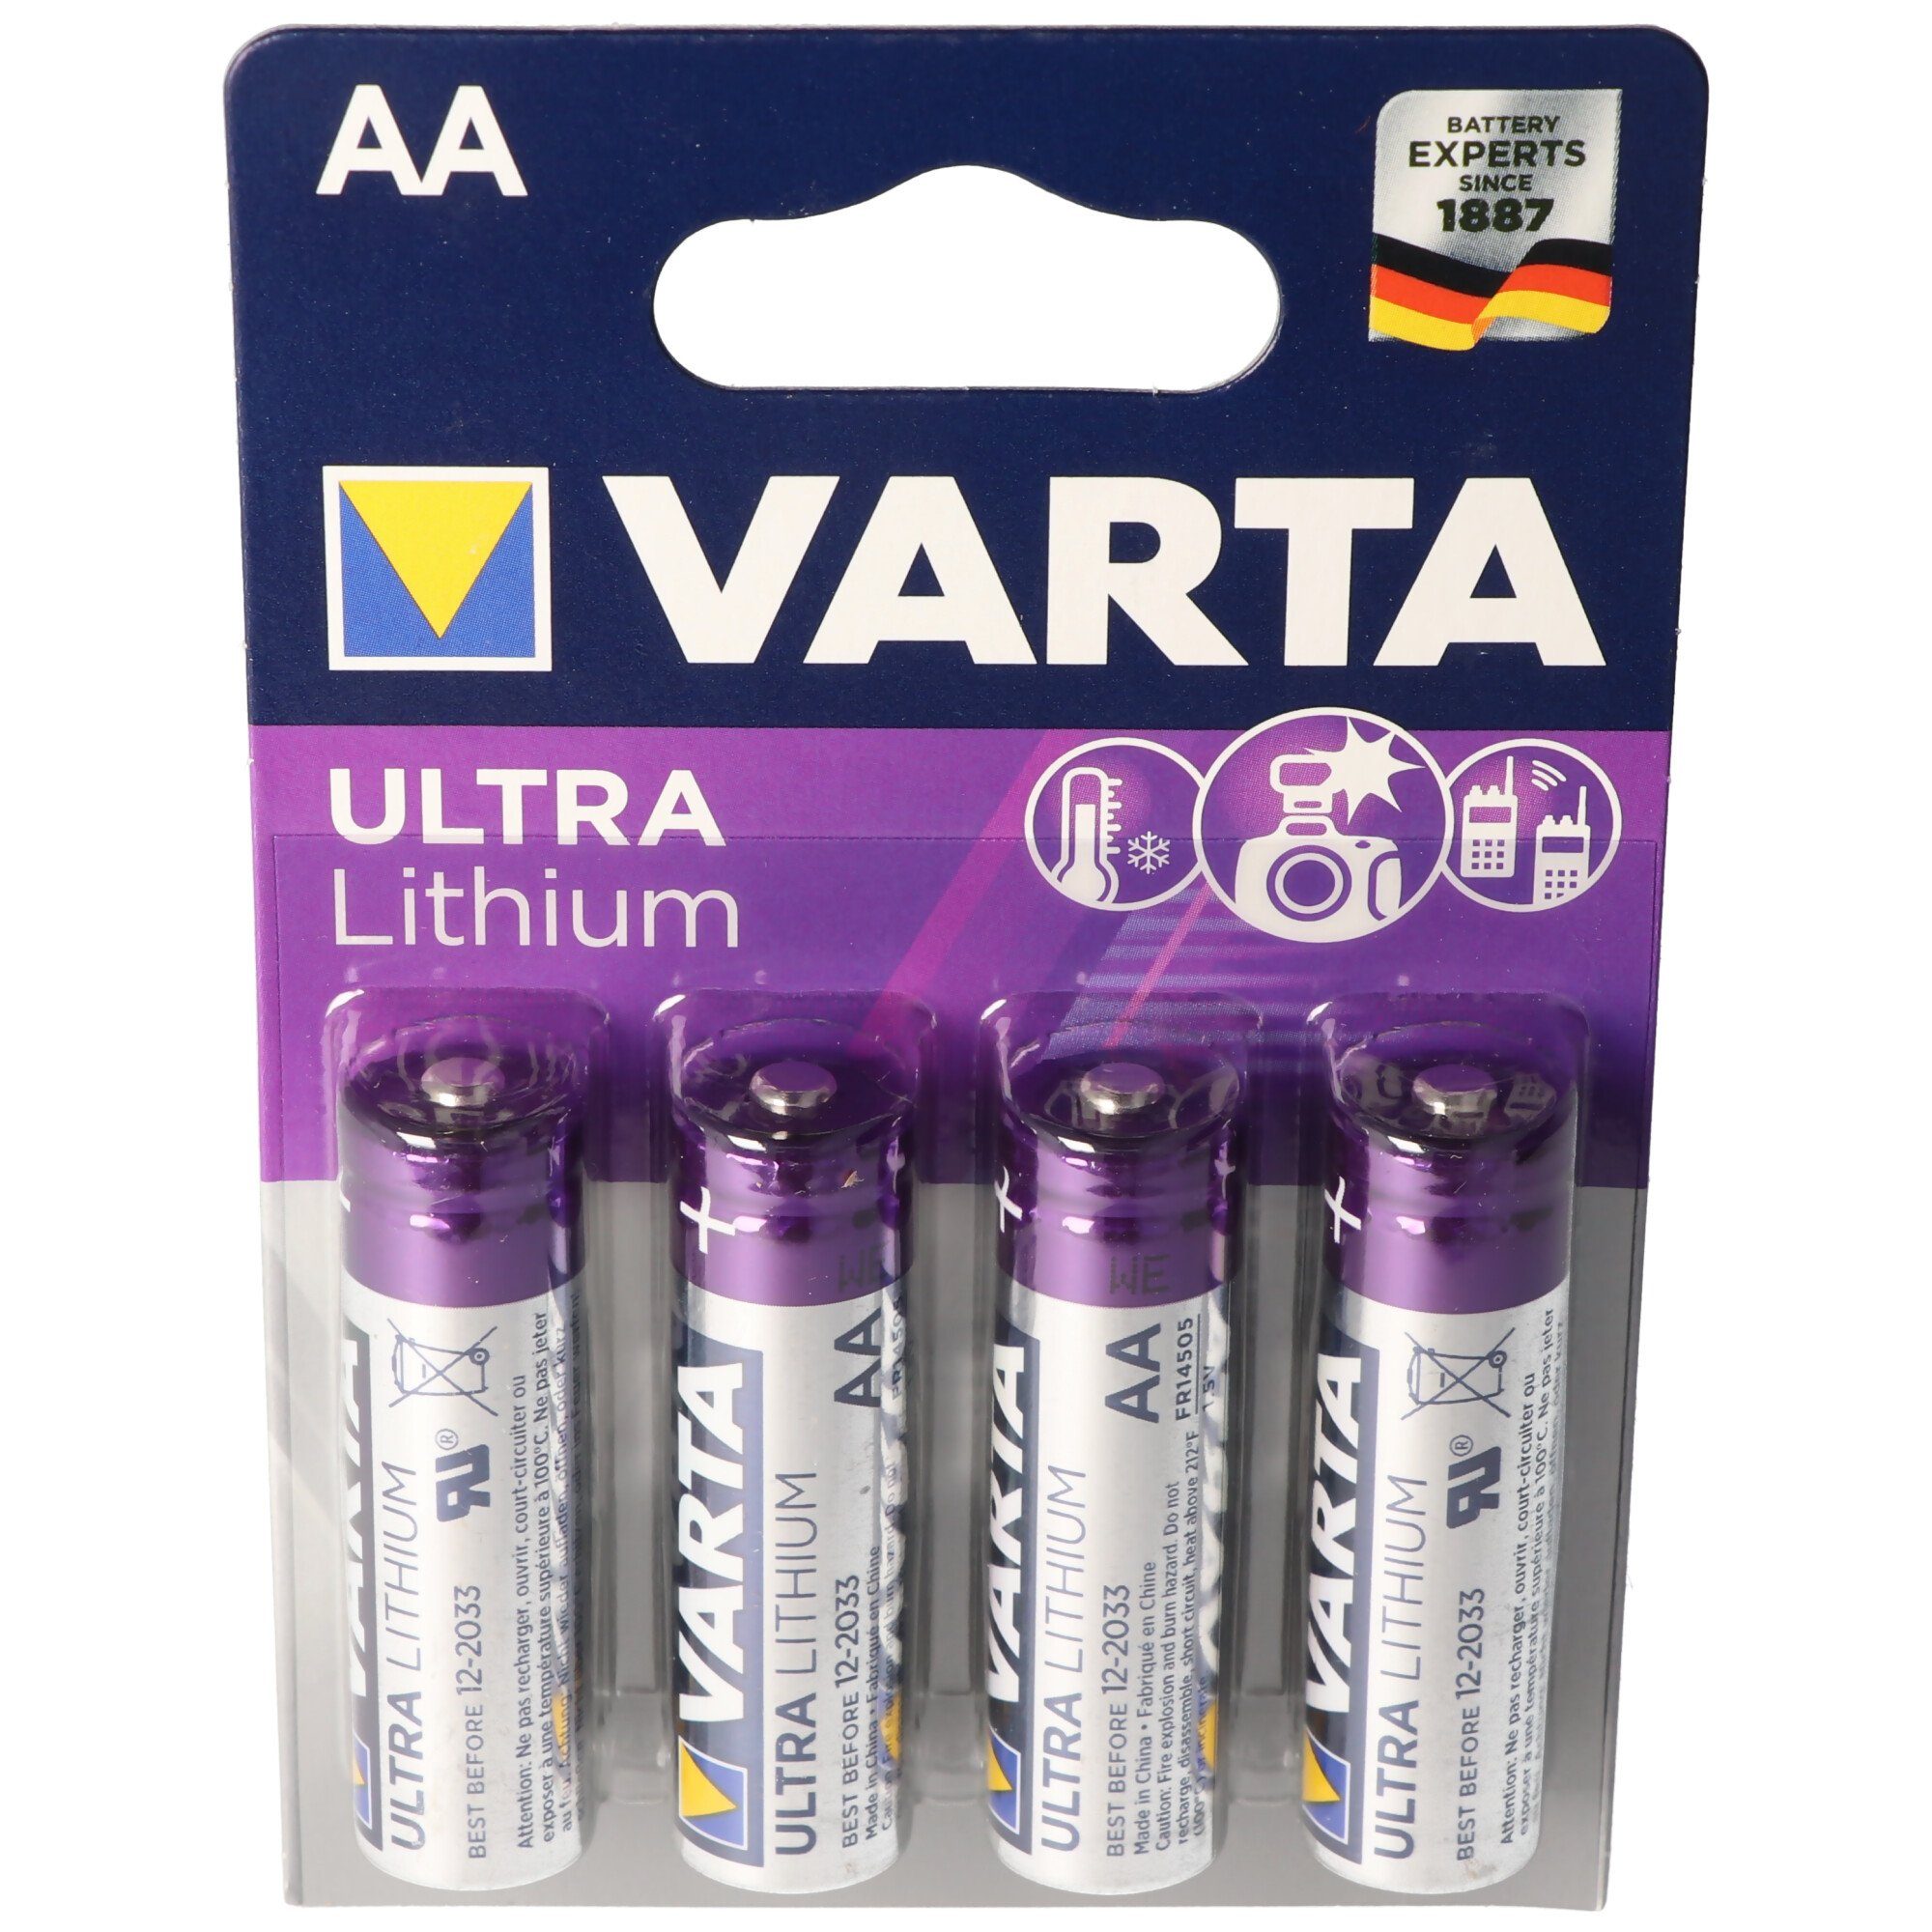 4 6106, Varta Varta Lithium Ultra AA, Batterie Lithium Batterien, VARTA Mignon 1,5V,